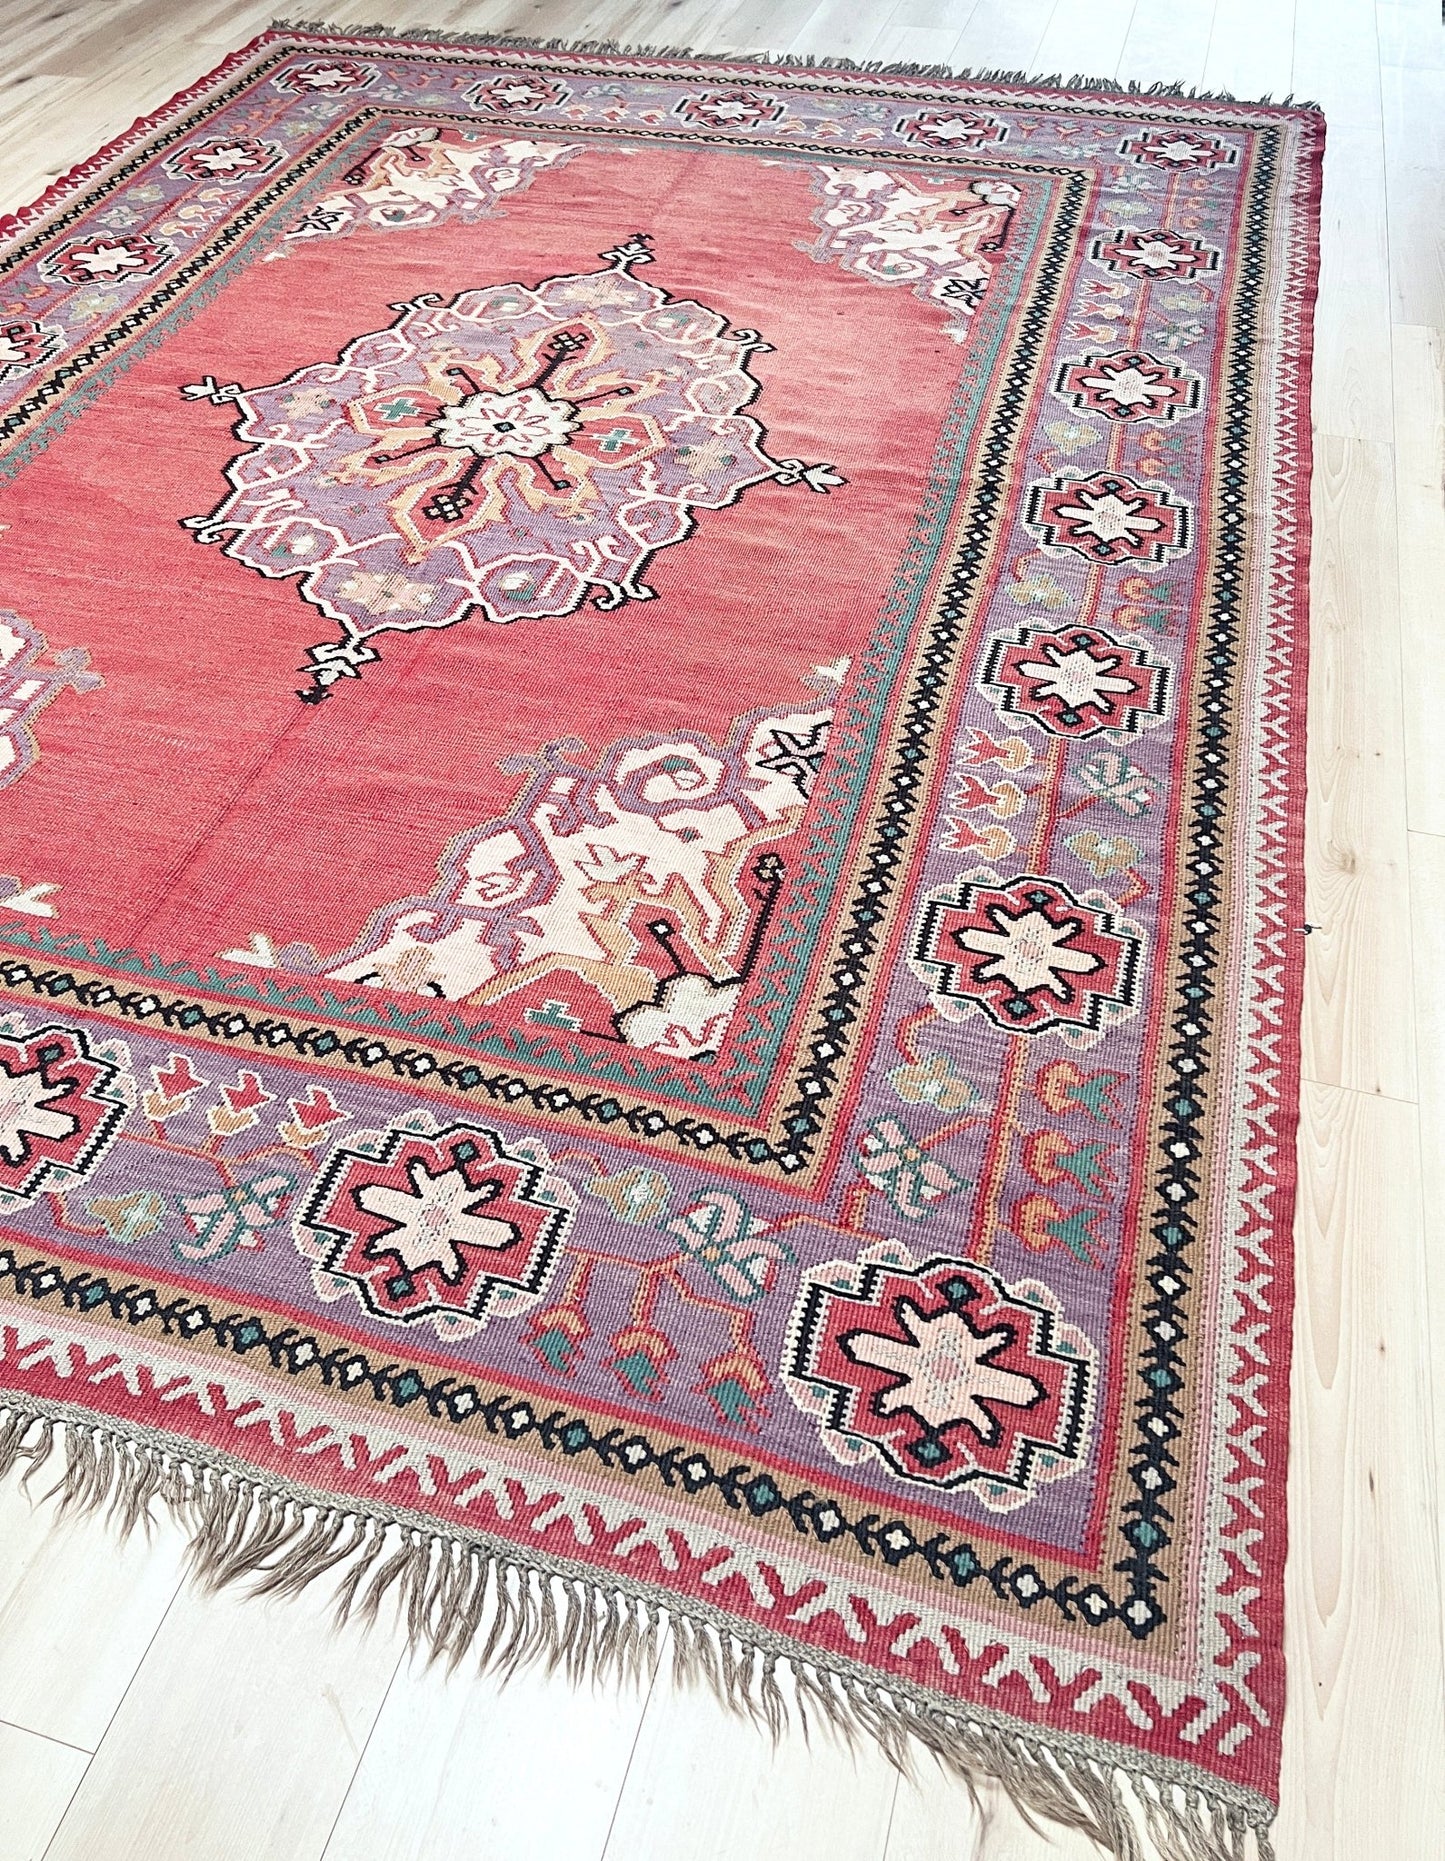 antique oushak large turkish kilim rug shop san francisco bay area, berkeley. Buy kilim online free shipping to USA, Canada